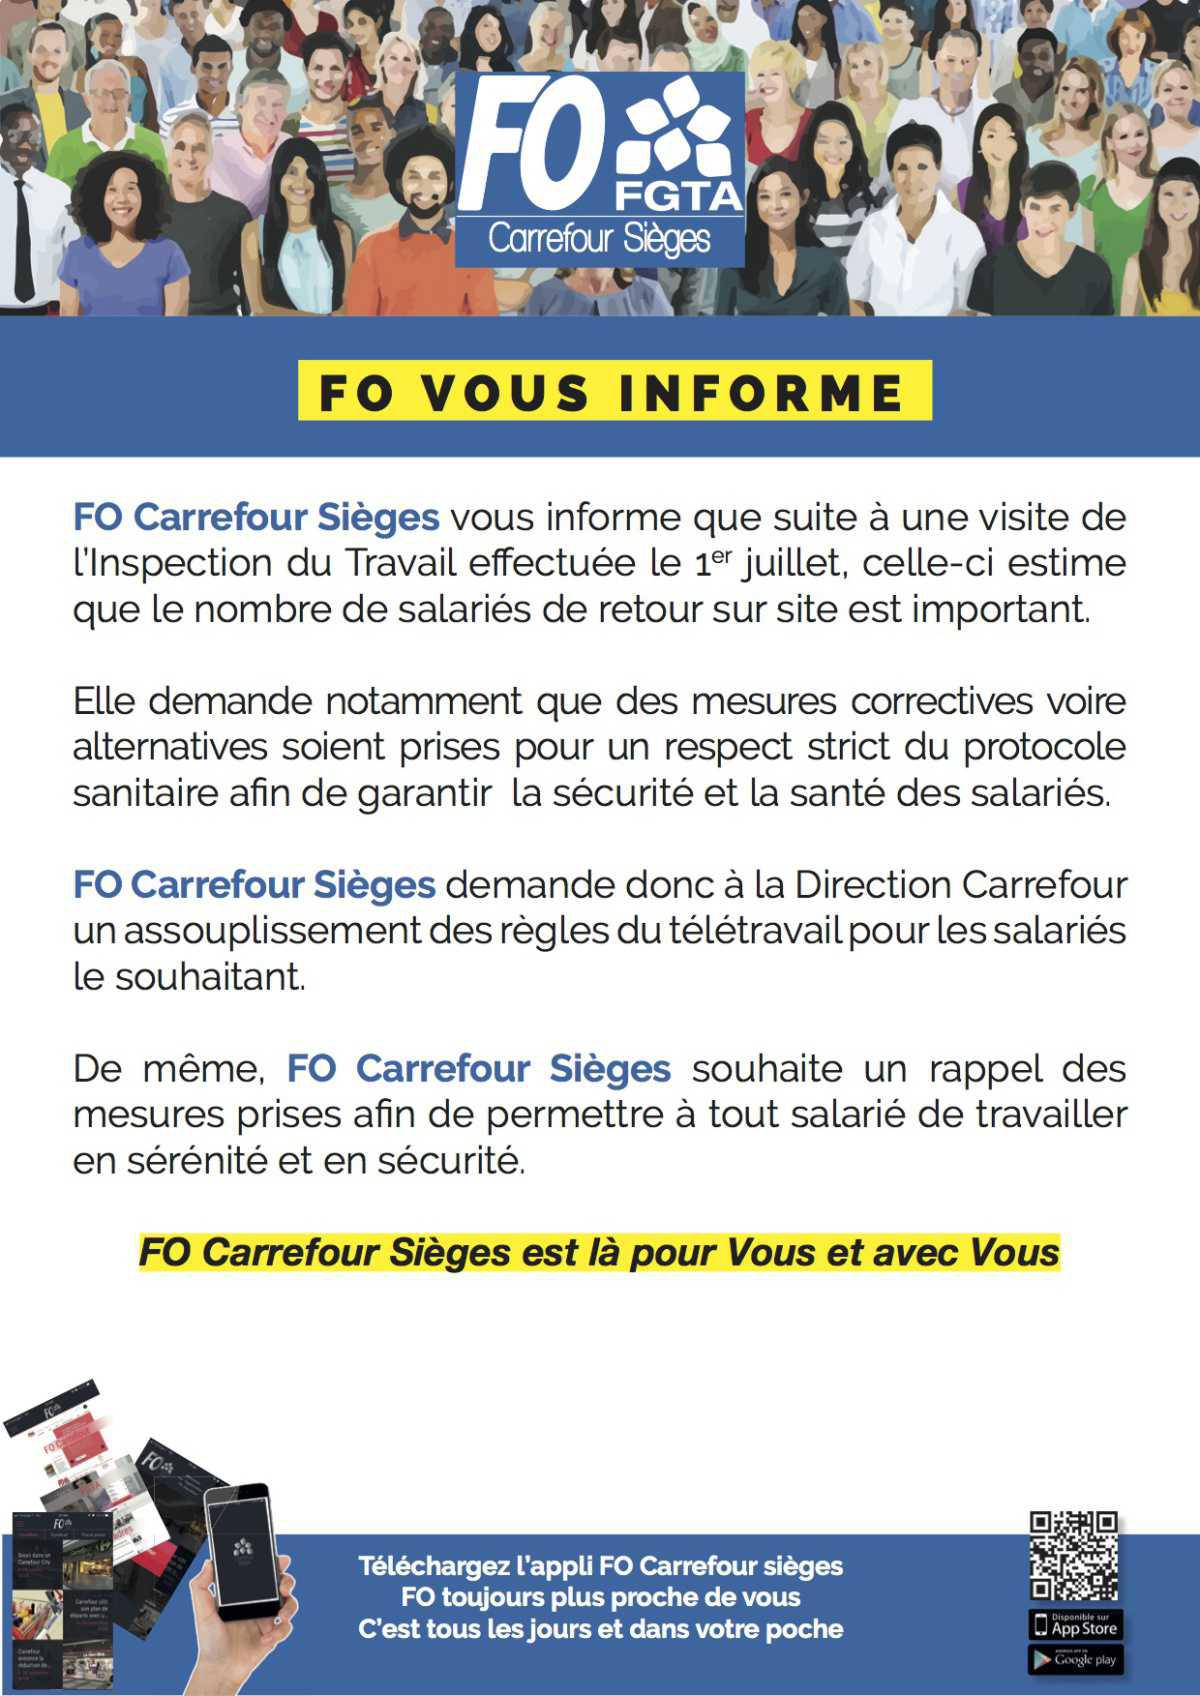 FO Carrefour Sièges vous informe!